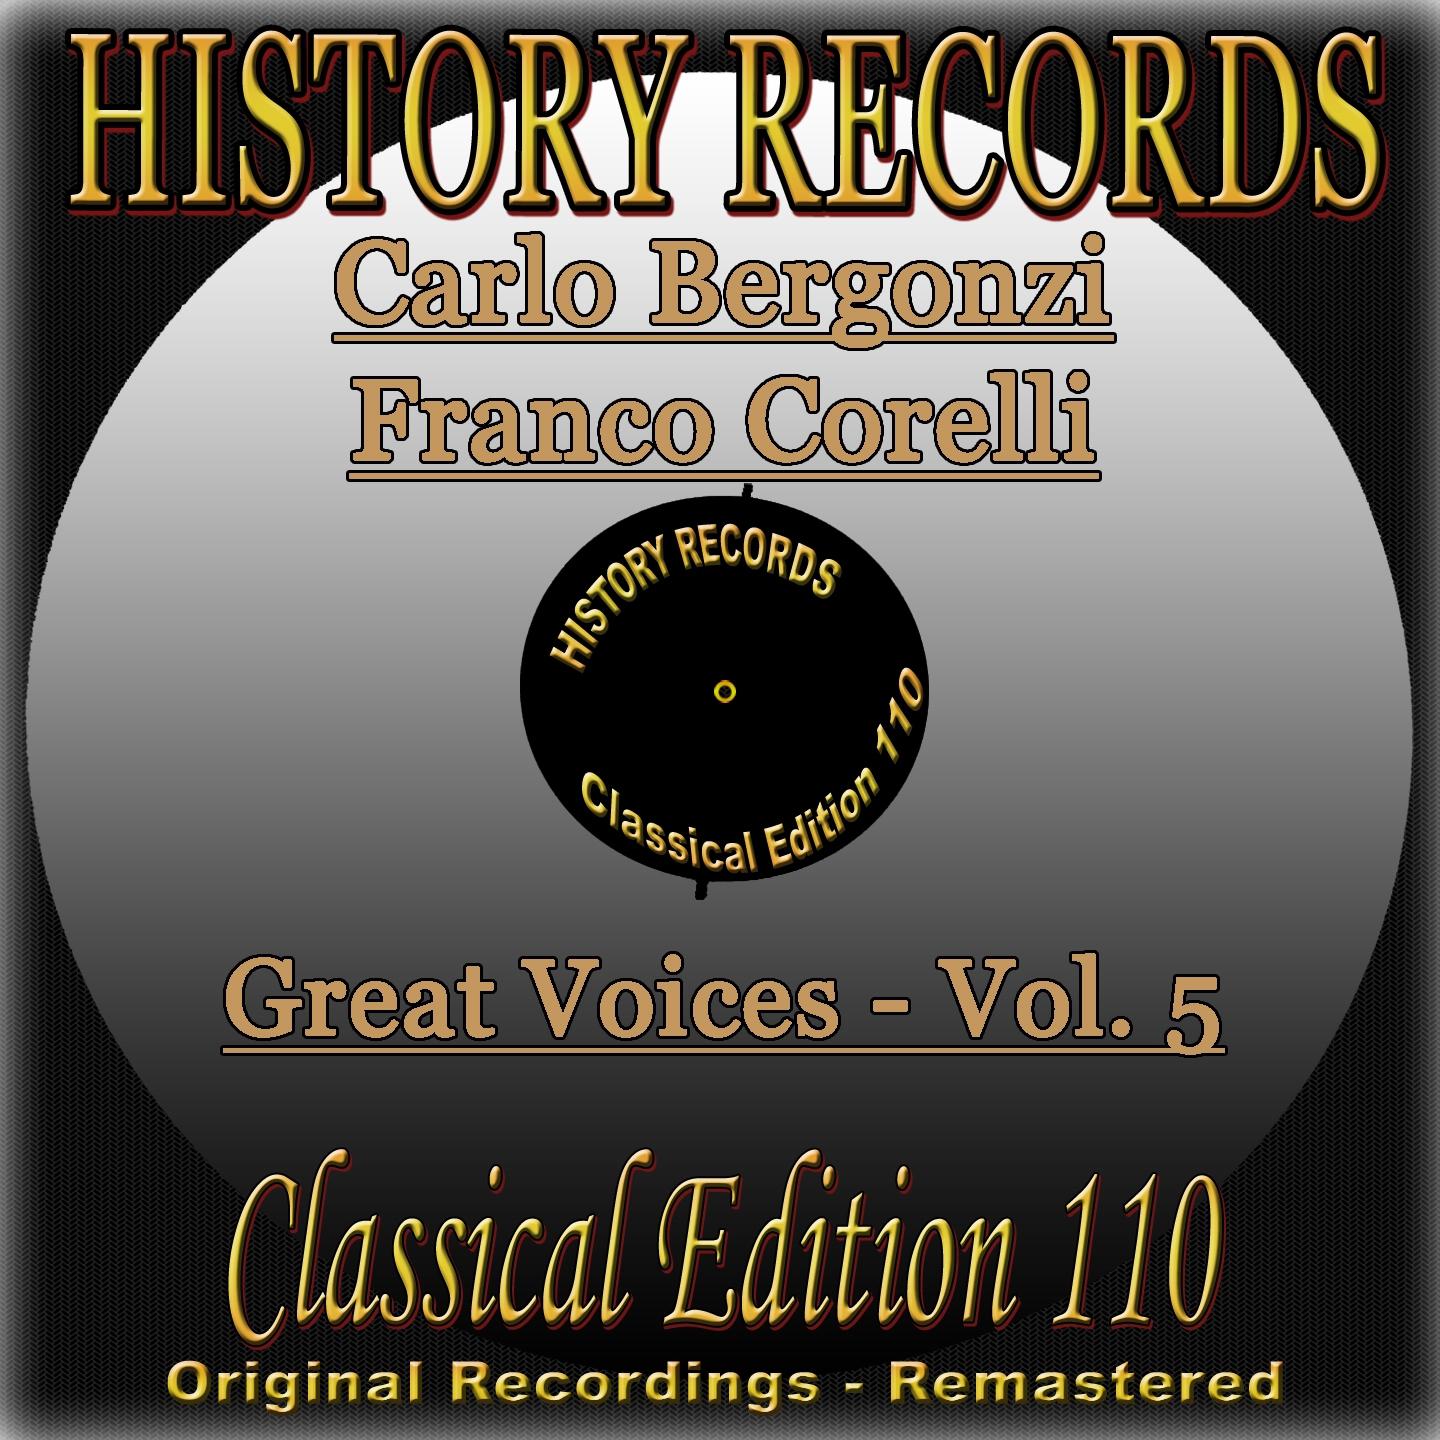 History Records - Classical Edition 110 - Great Voices - Carlo Bergonzi & Franco Corelli (Original Recordings - Remastered)